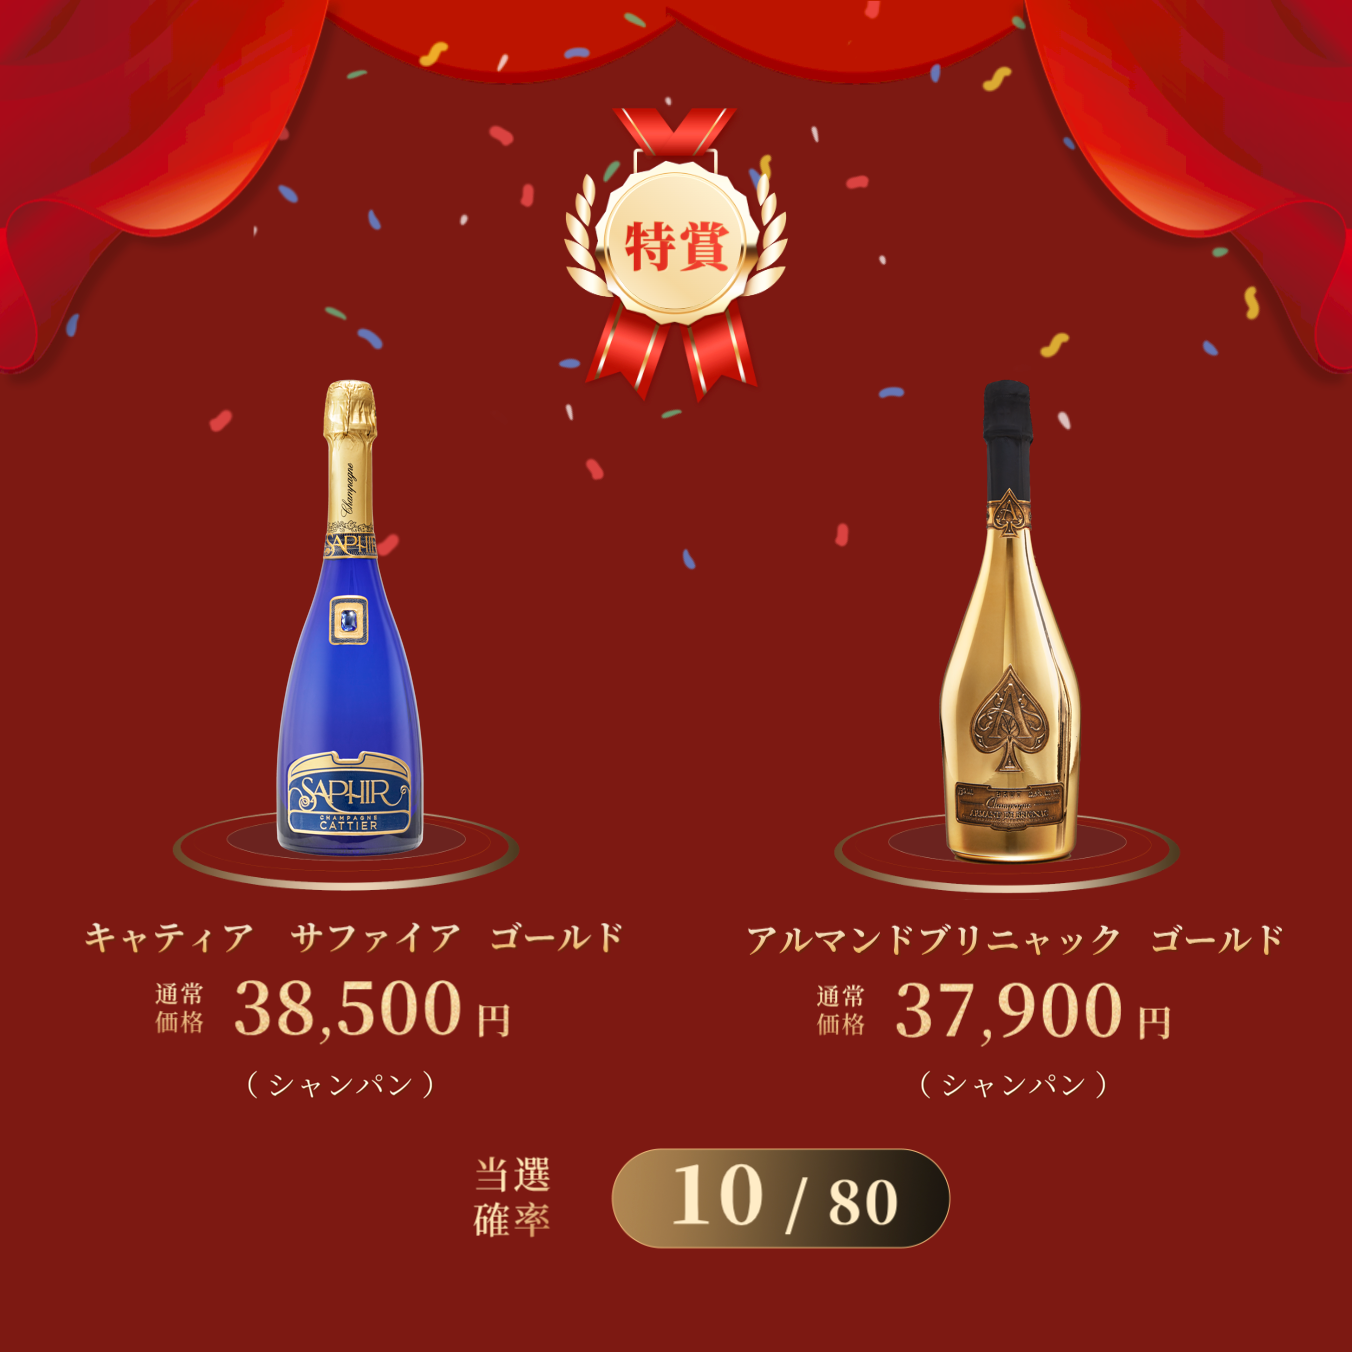 7,150円ワインくじ